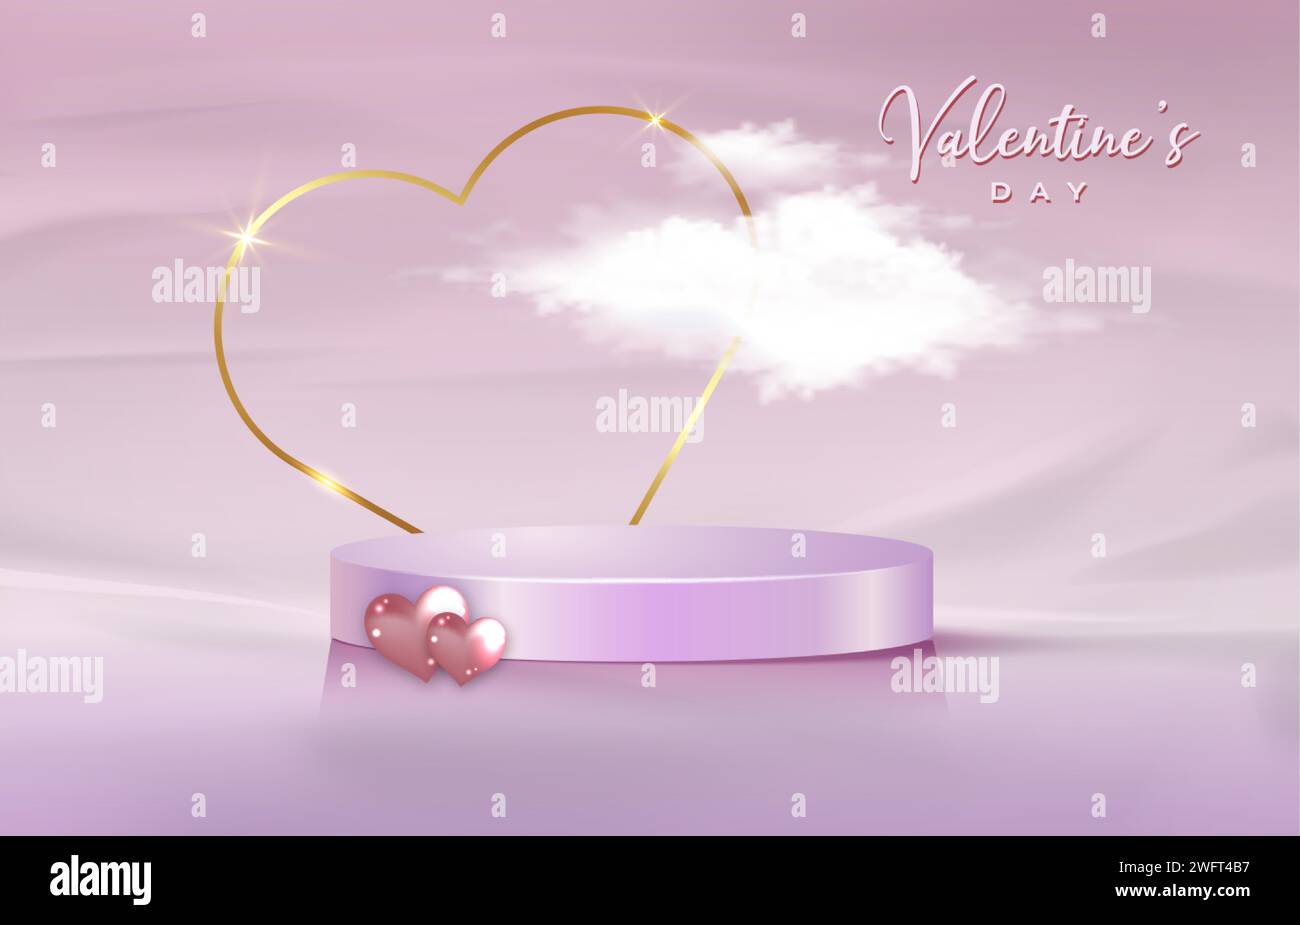 Affichage de studio de plate-forme 3d Saint-Valentin, cadre de coeur d'or et nuage moelleux. Studio sur pied rose. Scène minimale de Saint-Valentin pour le produit Illustration de Vecteur